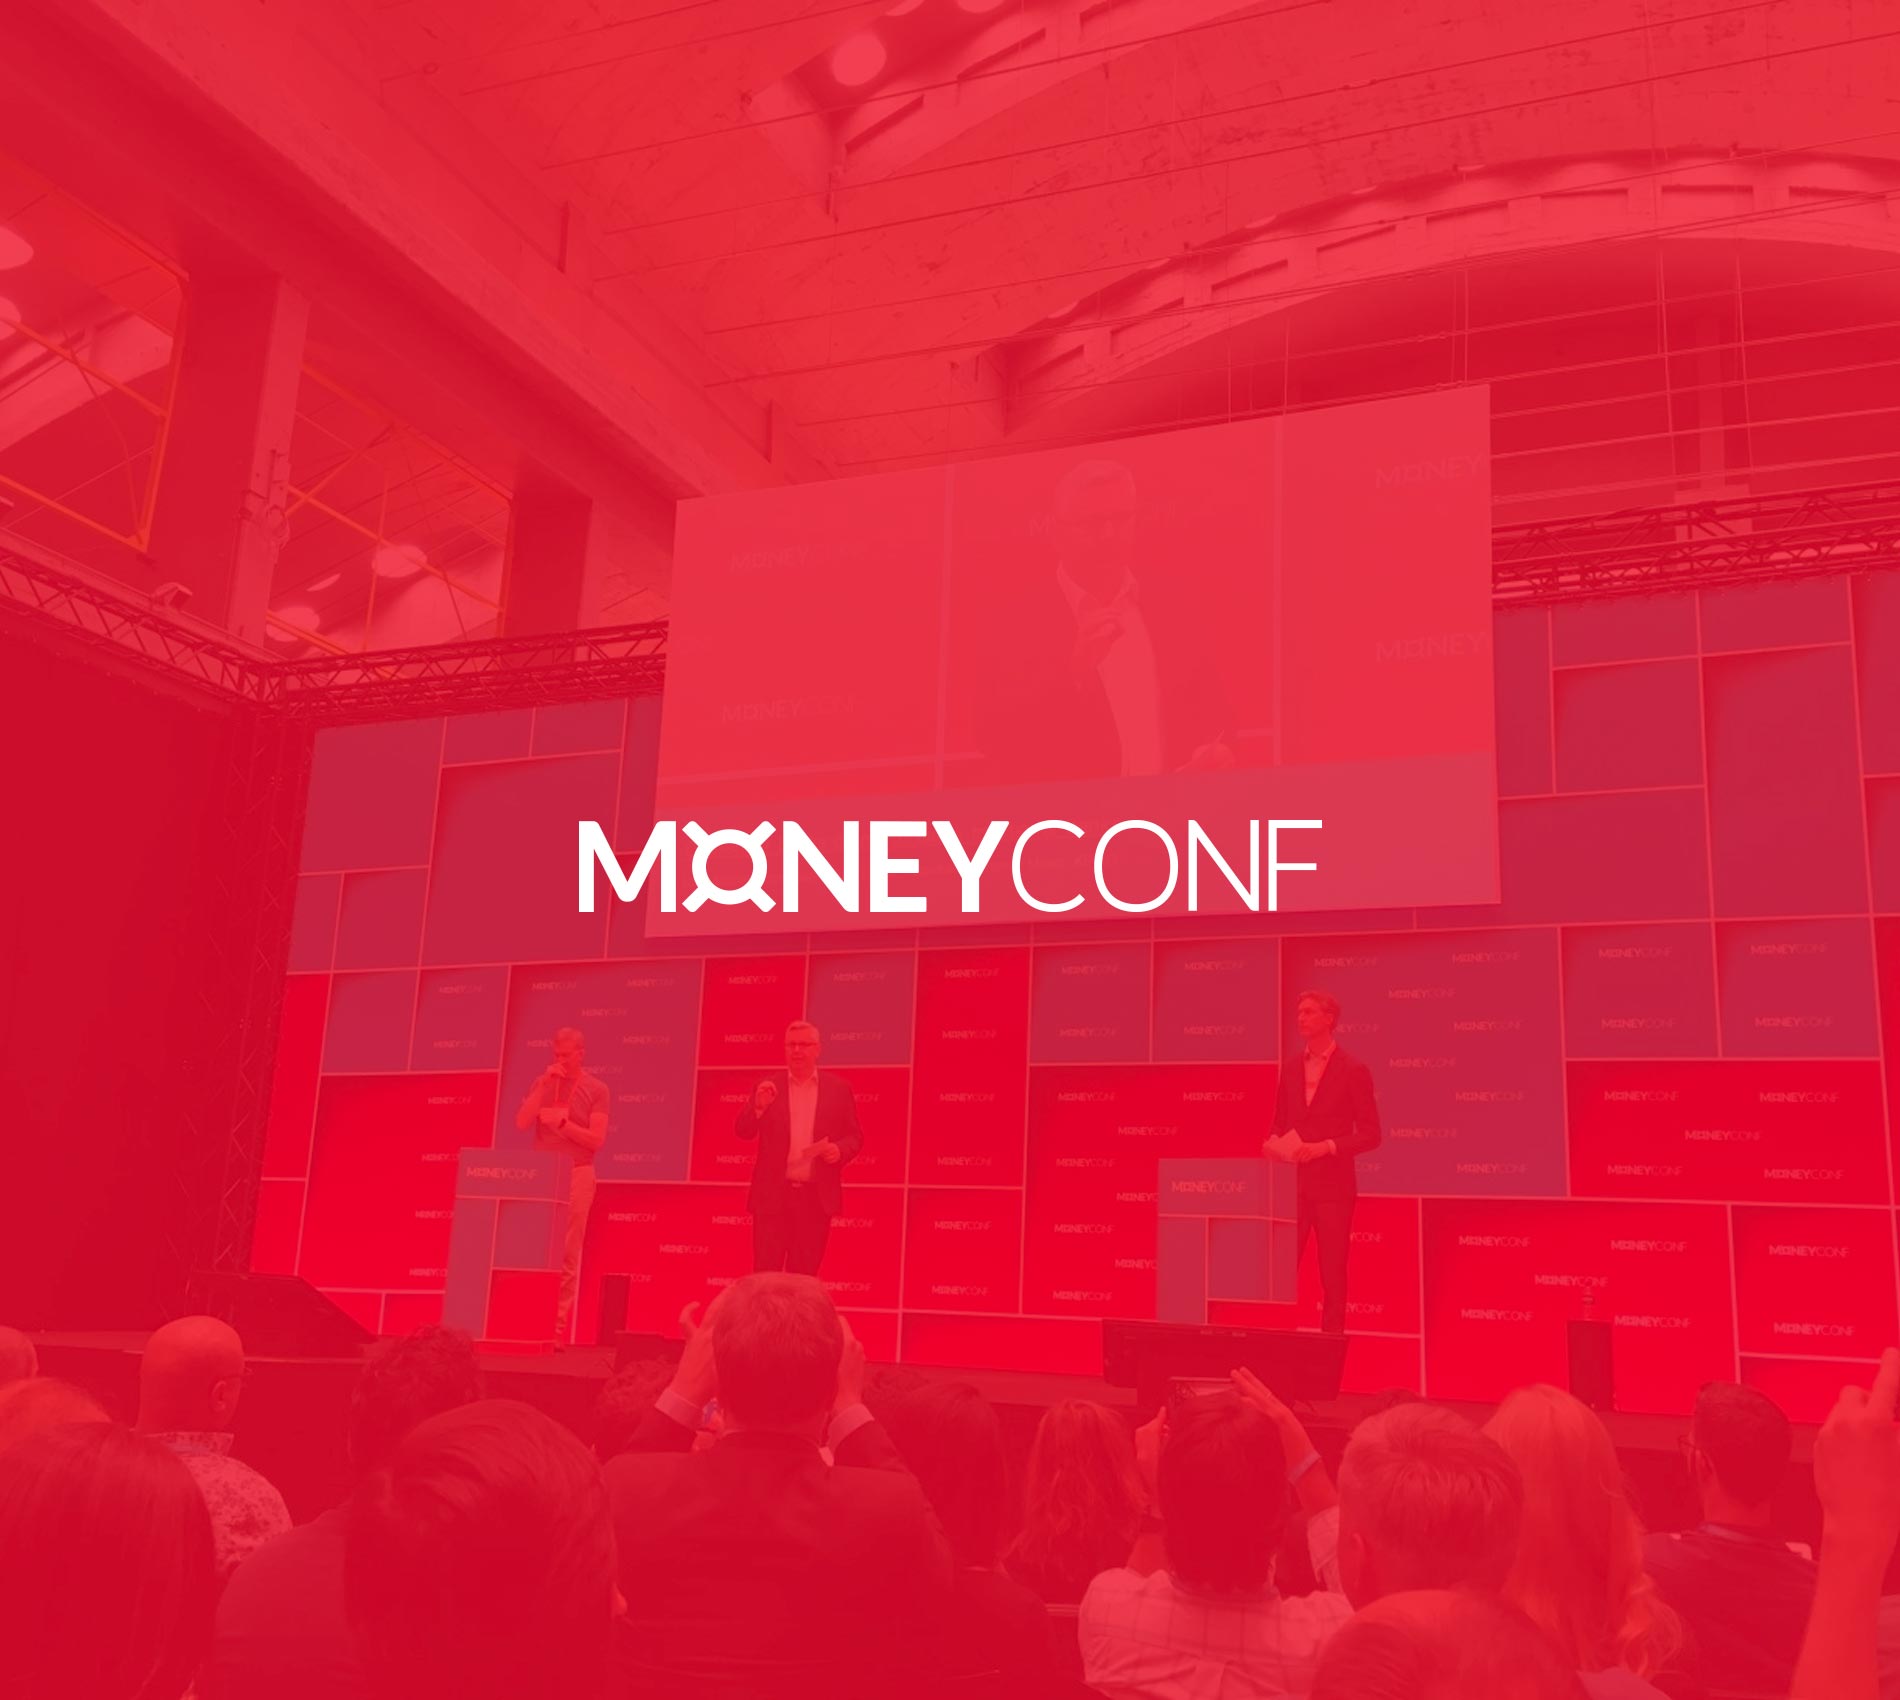 MoneyConf 2017, Madrid